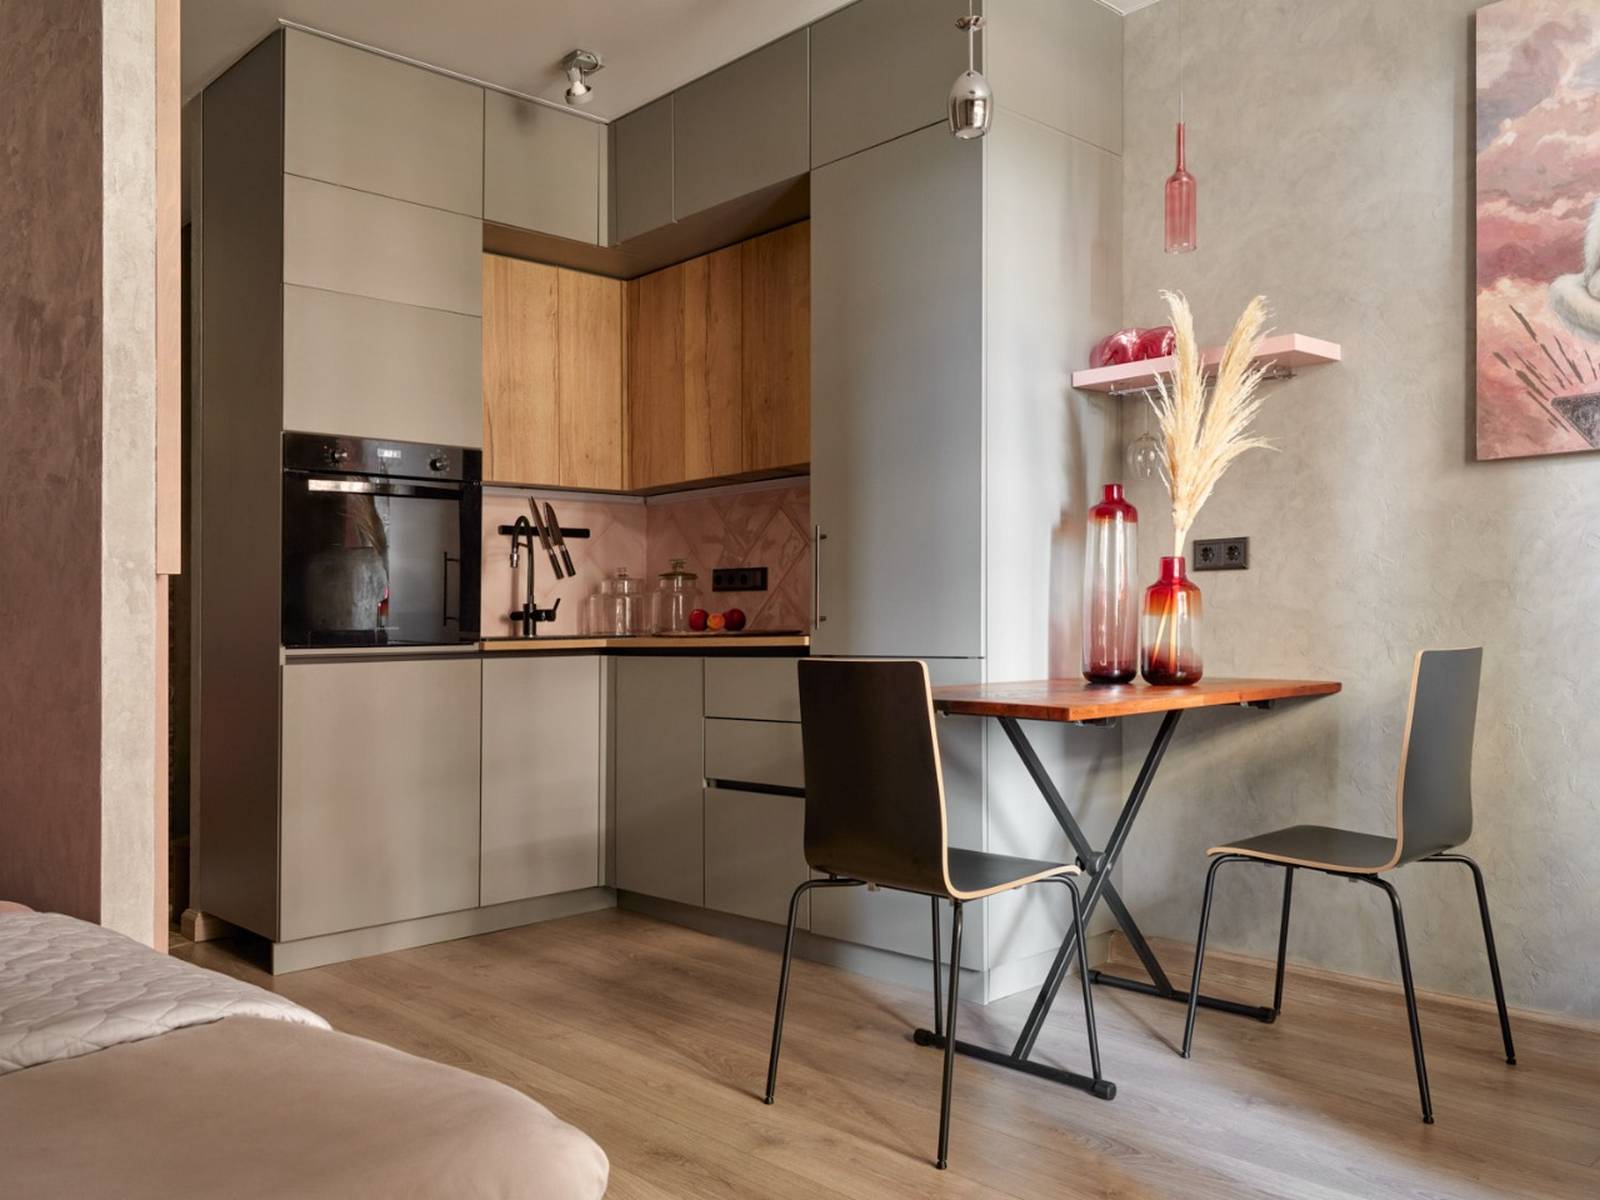 Phòng bếp thiết kế kiểu chữ L phù hợp với cấu trúc căn hộ, toàn bộ hệ tủ bếp có màu xám thanh lịch, kết hợp backsplash màu hồng phấn đẹp mắt. 